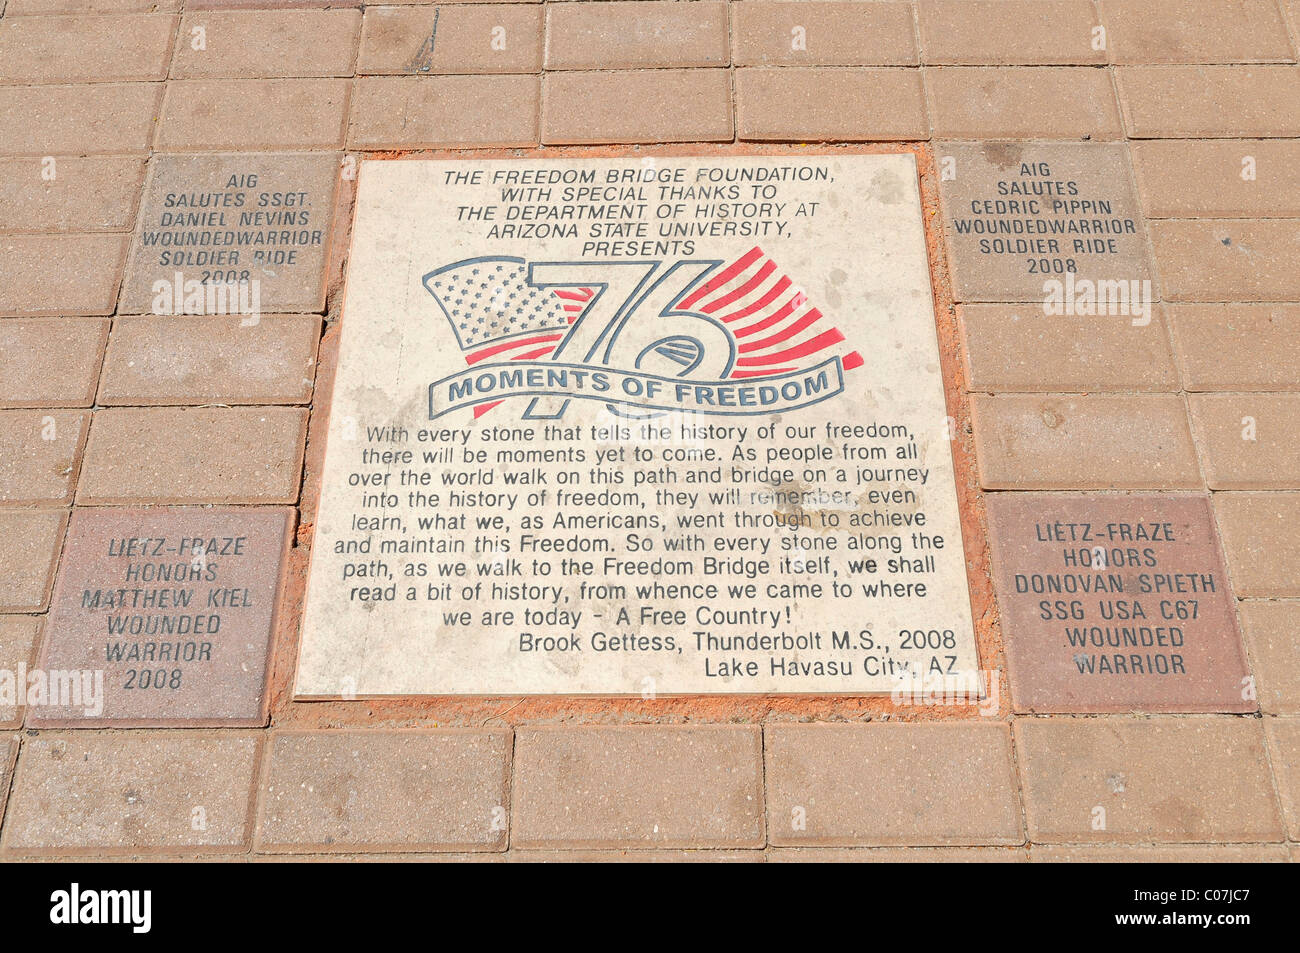 Los momentos de libertad, placa conmemorativa, London Bridge Resort, Lake Havasu City, Arizona, EE.UU., América del Norte Foto de stock